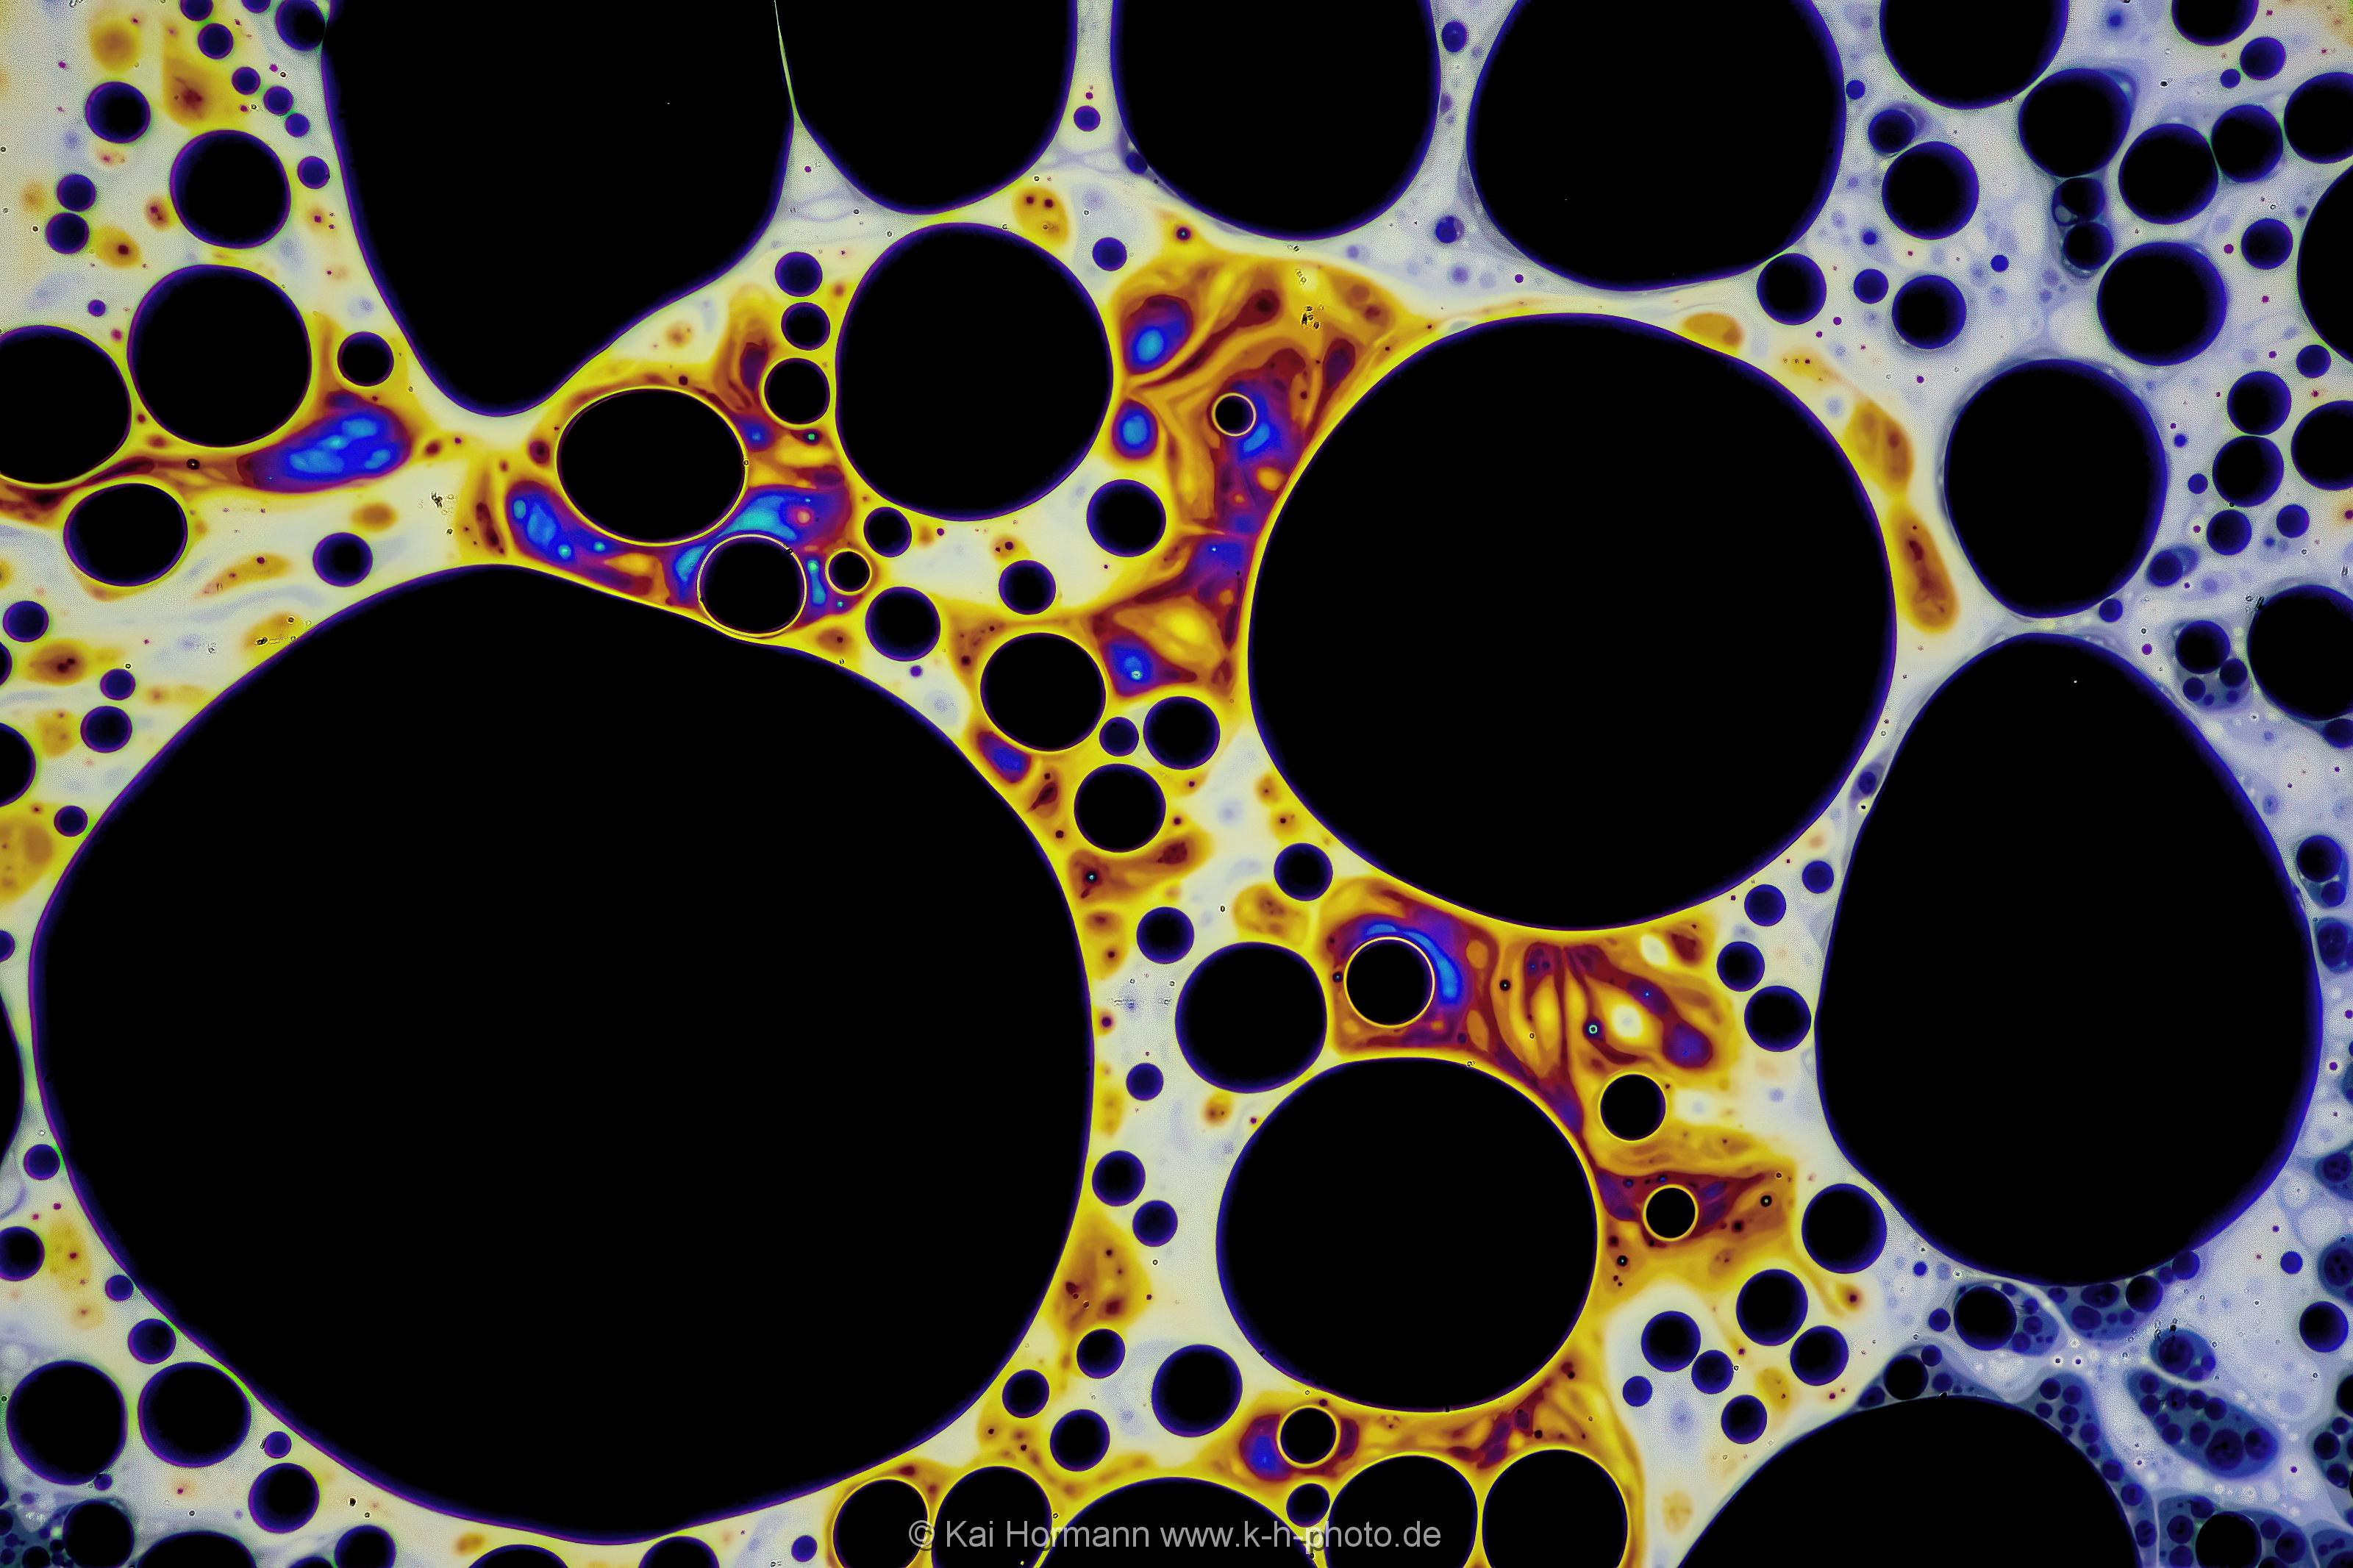 Strukturen und Farbmuster auf der Haut einer Seifenblase. Farb- und Interferenzmuster auf der Oberfläche einer Seifenblase. Vergrößerung ca. 50-100 X, Auflicht.